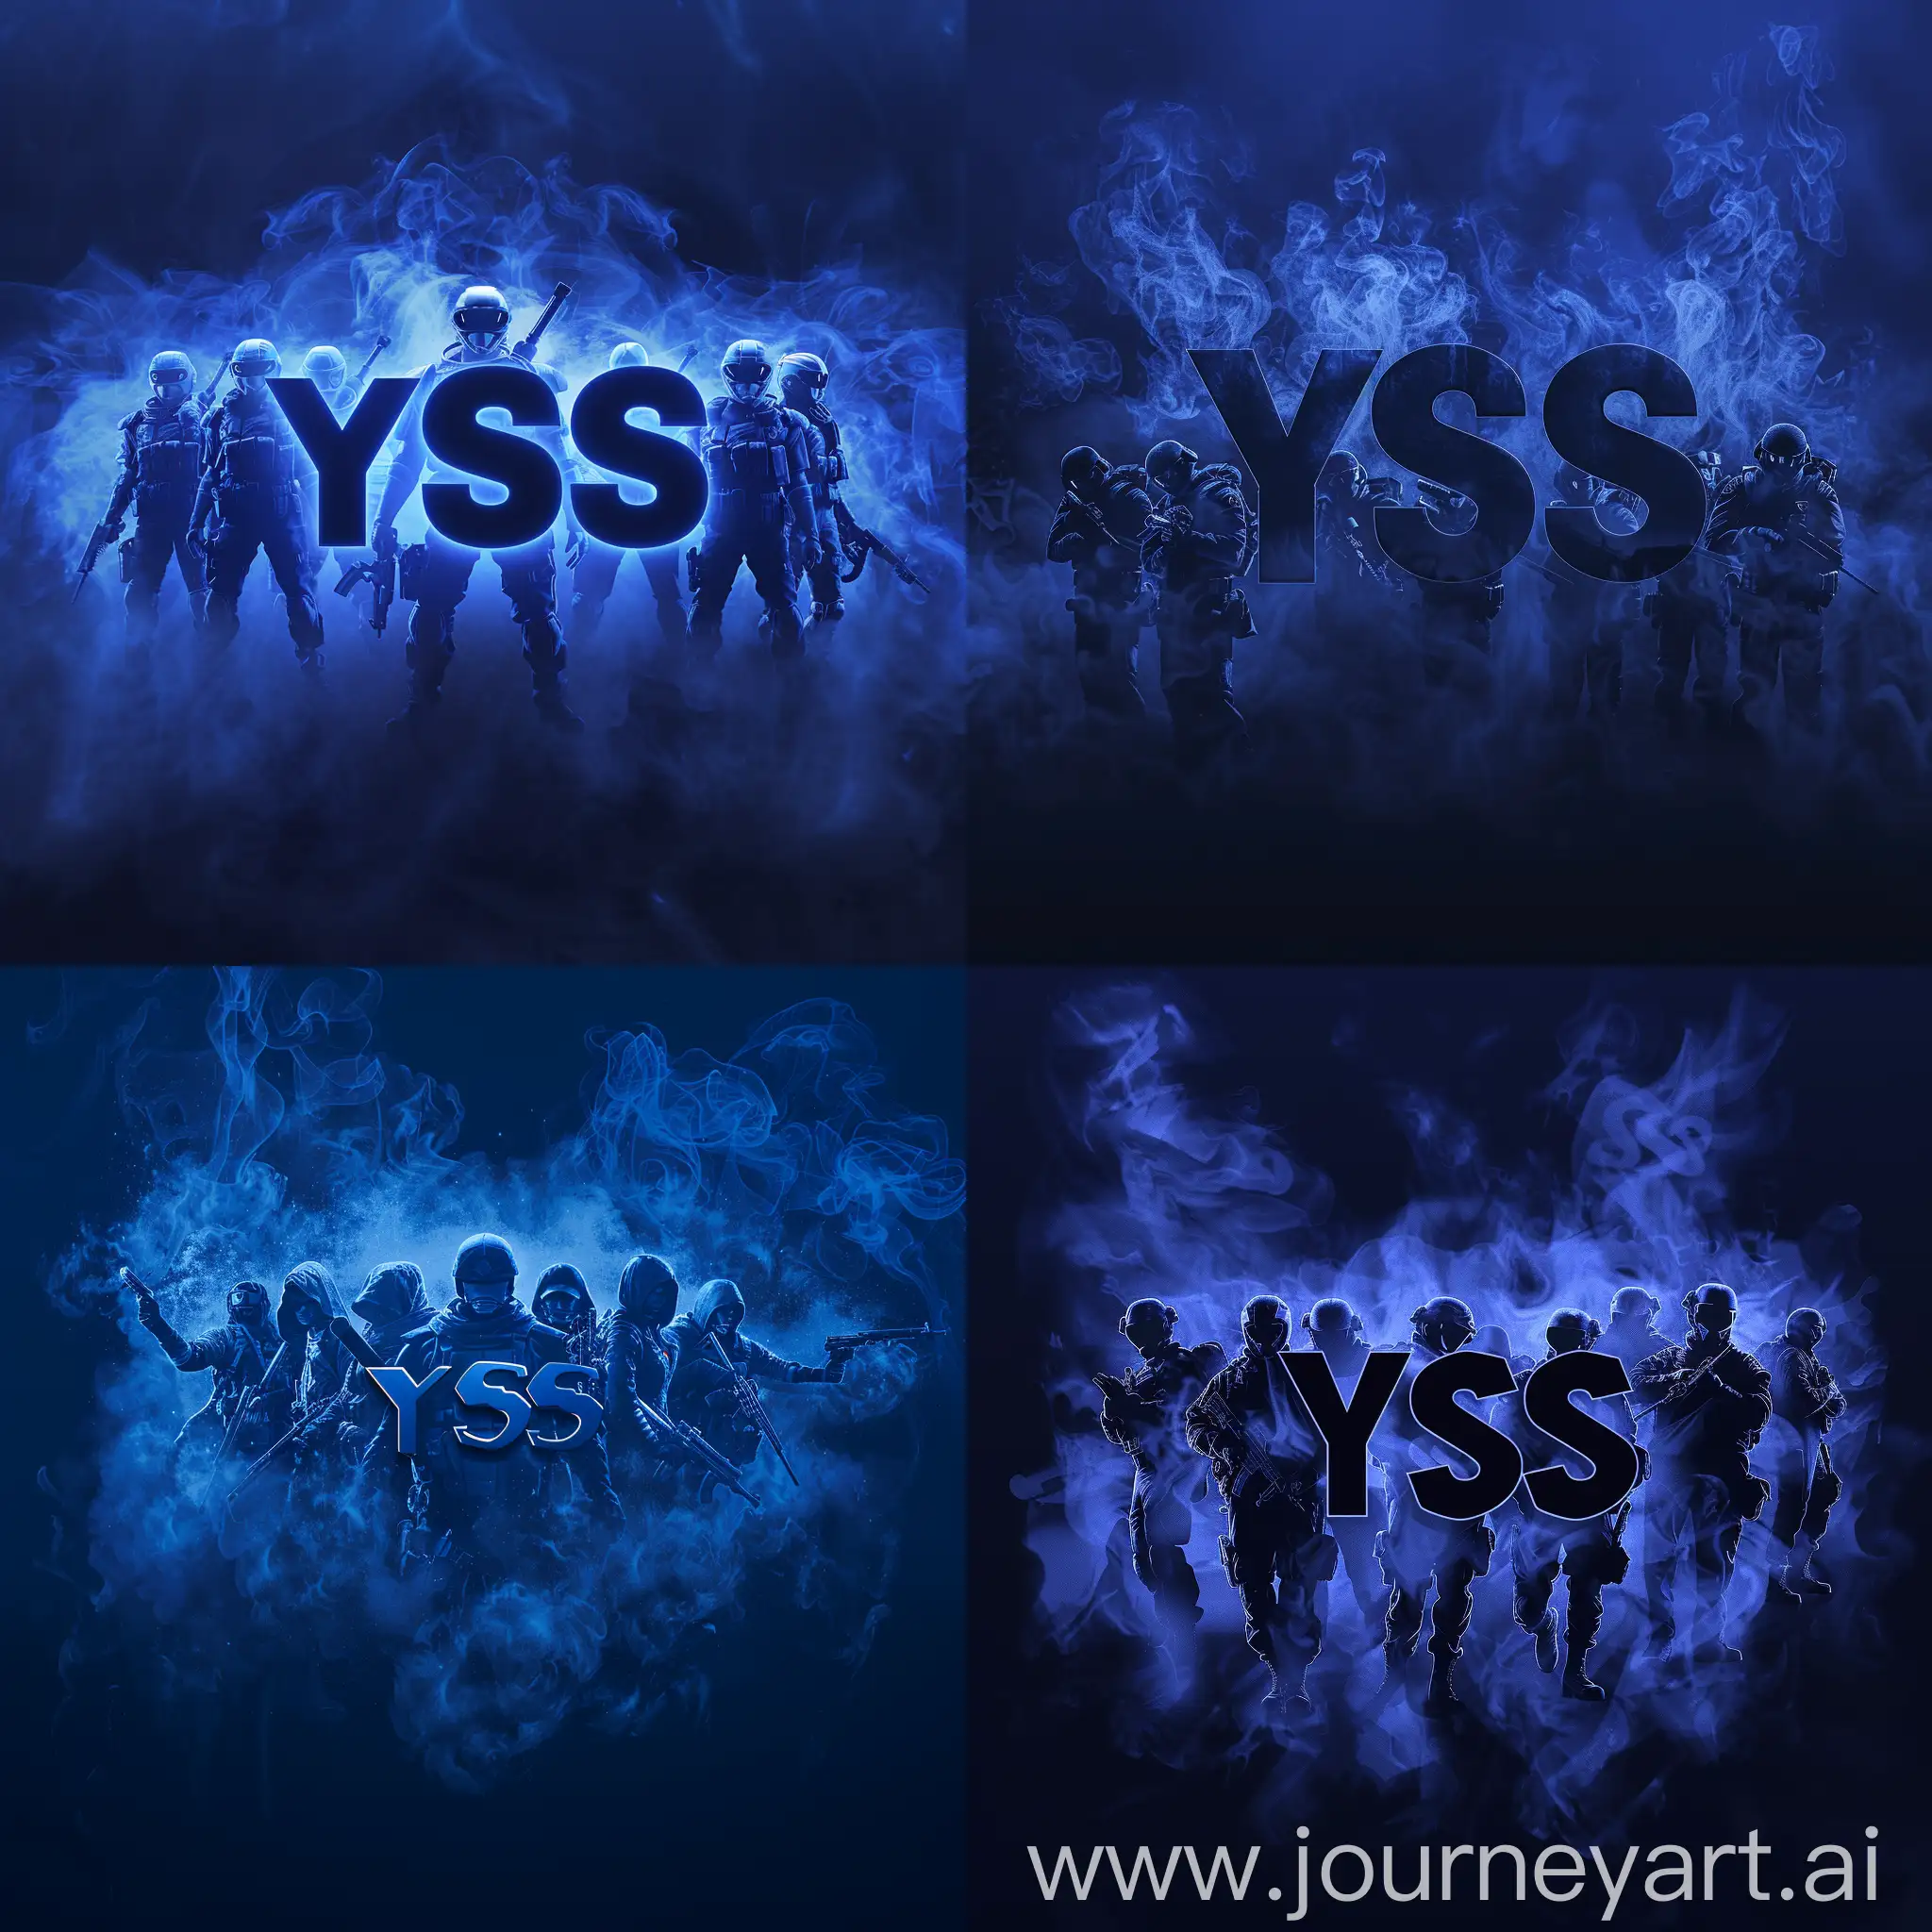 Gaming logo, темно-синие буквы "YSS", окруженные 5 рейнджерами и туманными контурами, что придает образу таинственности и загадочности, --s 200